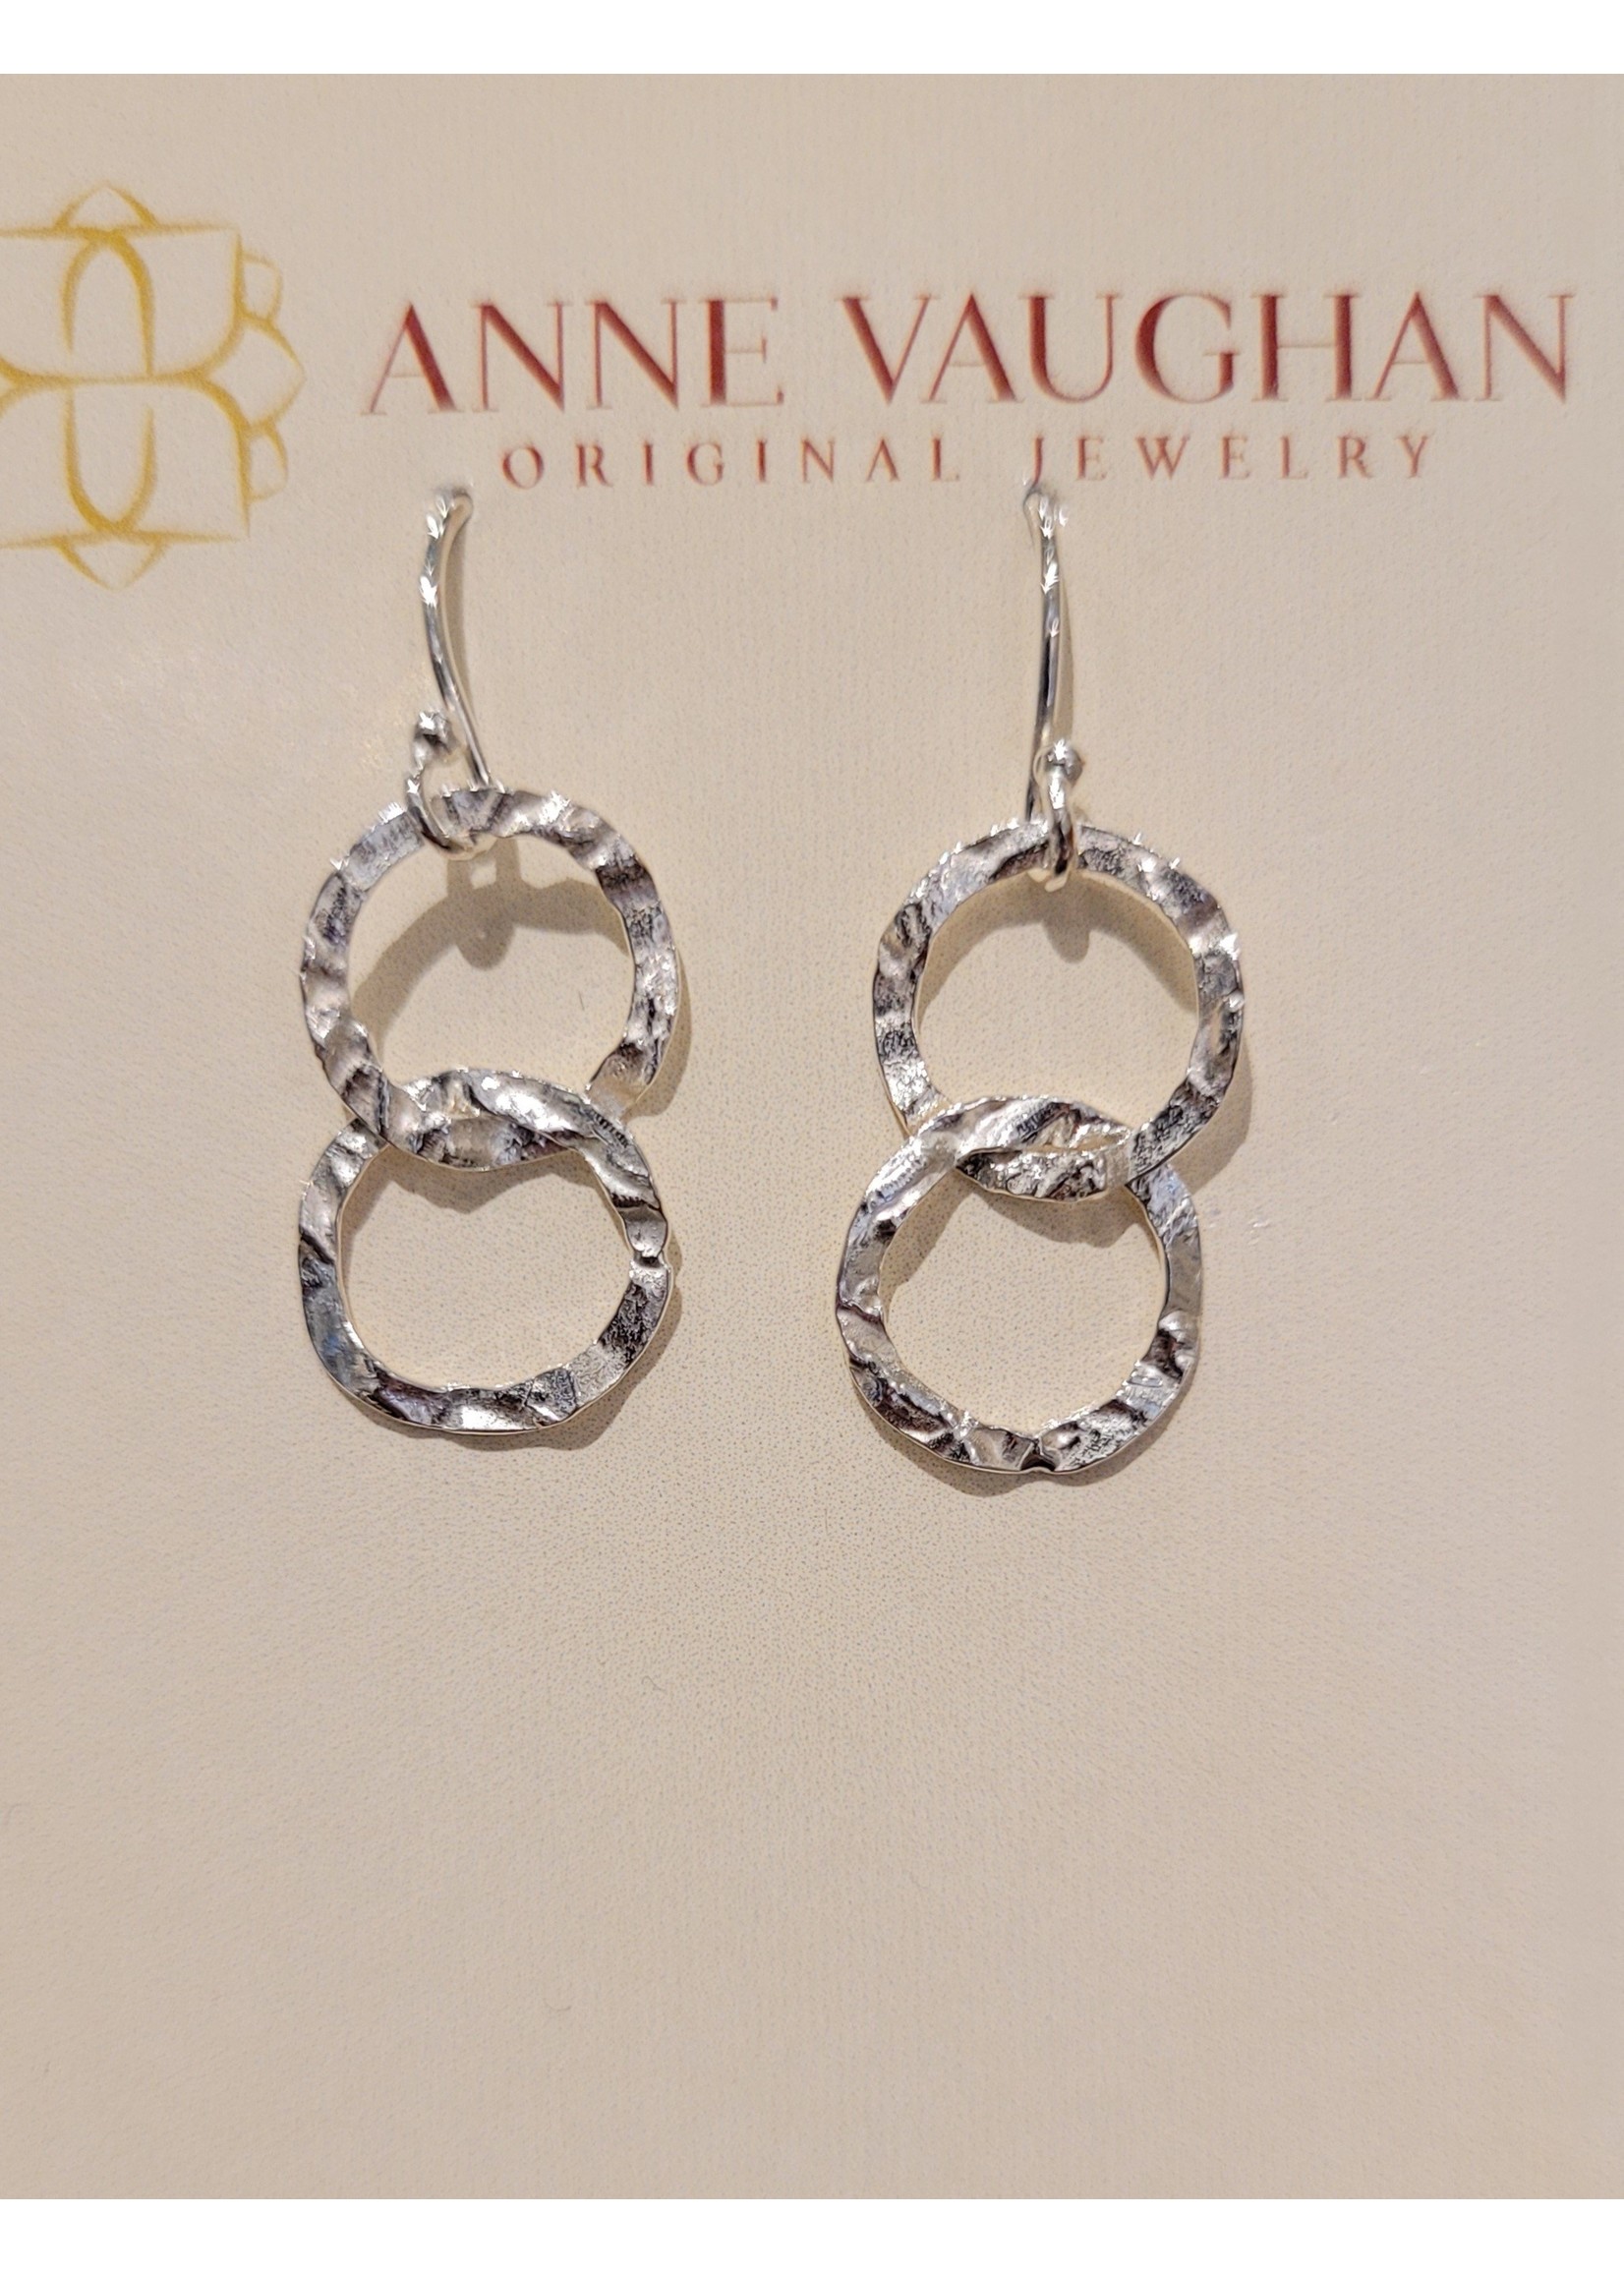 Anne Vaughan Designs Earrings, Totality double hoop